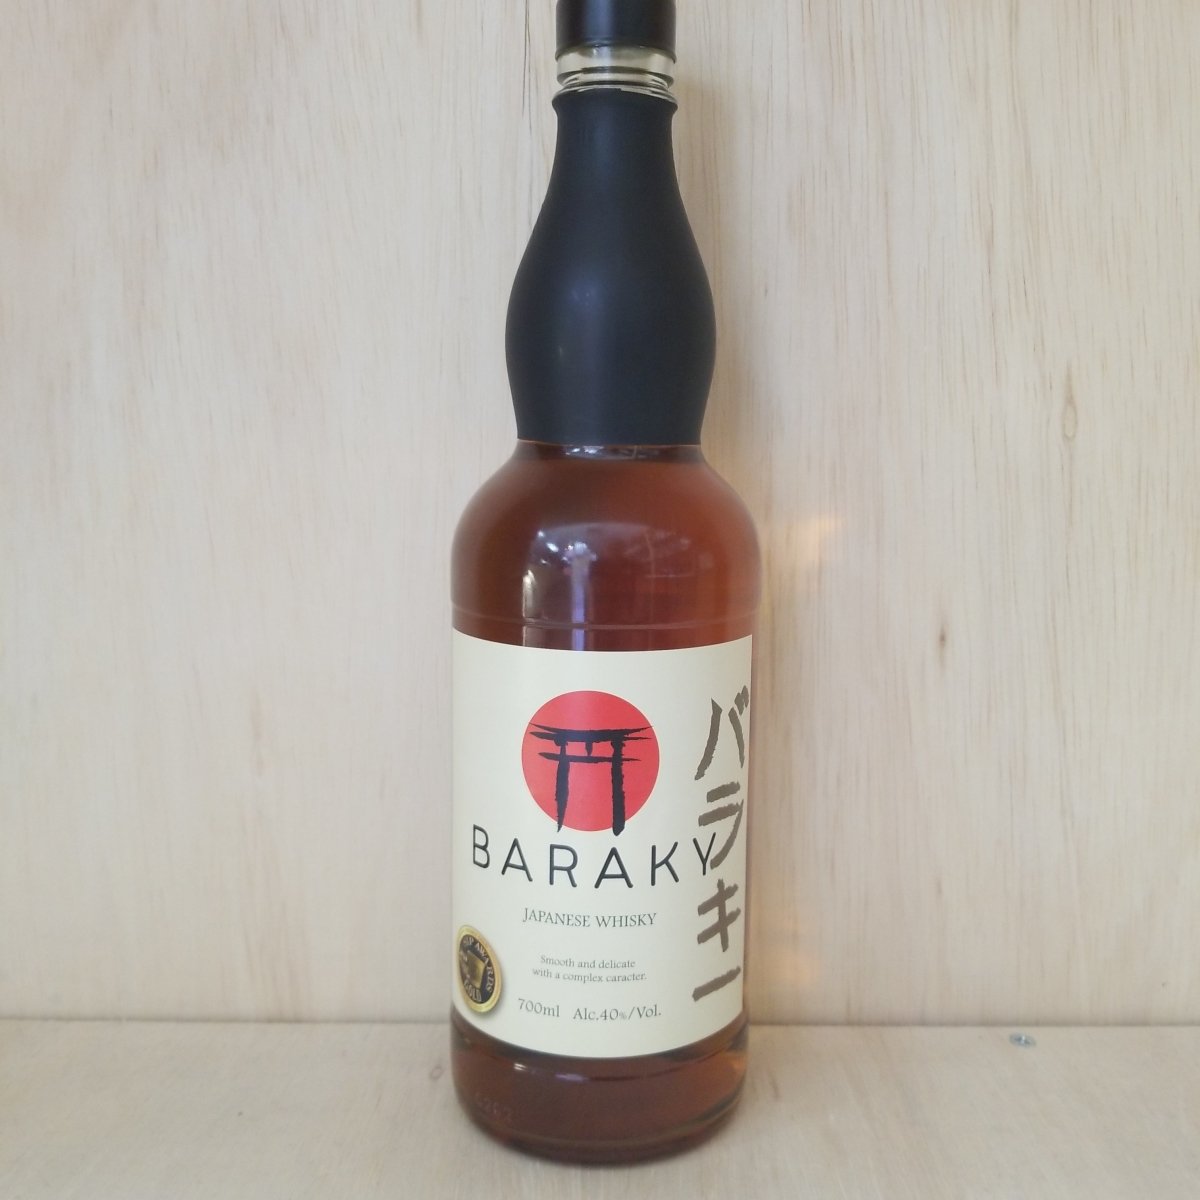 Baraky Japanese Whisky 700ml - Sip & Say